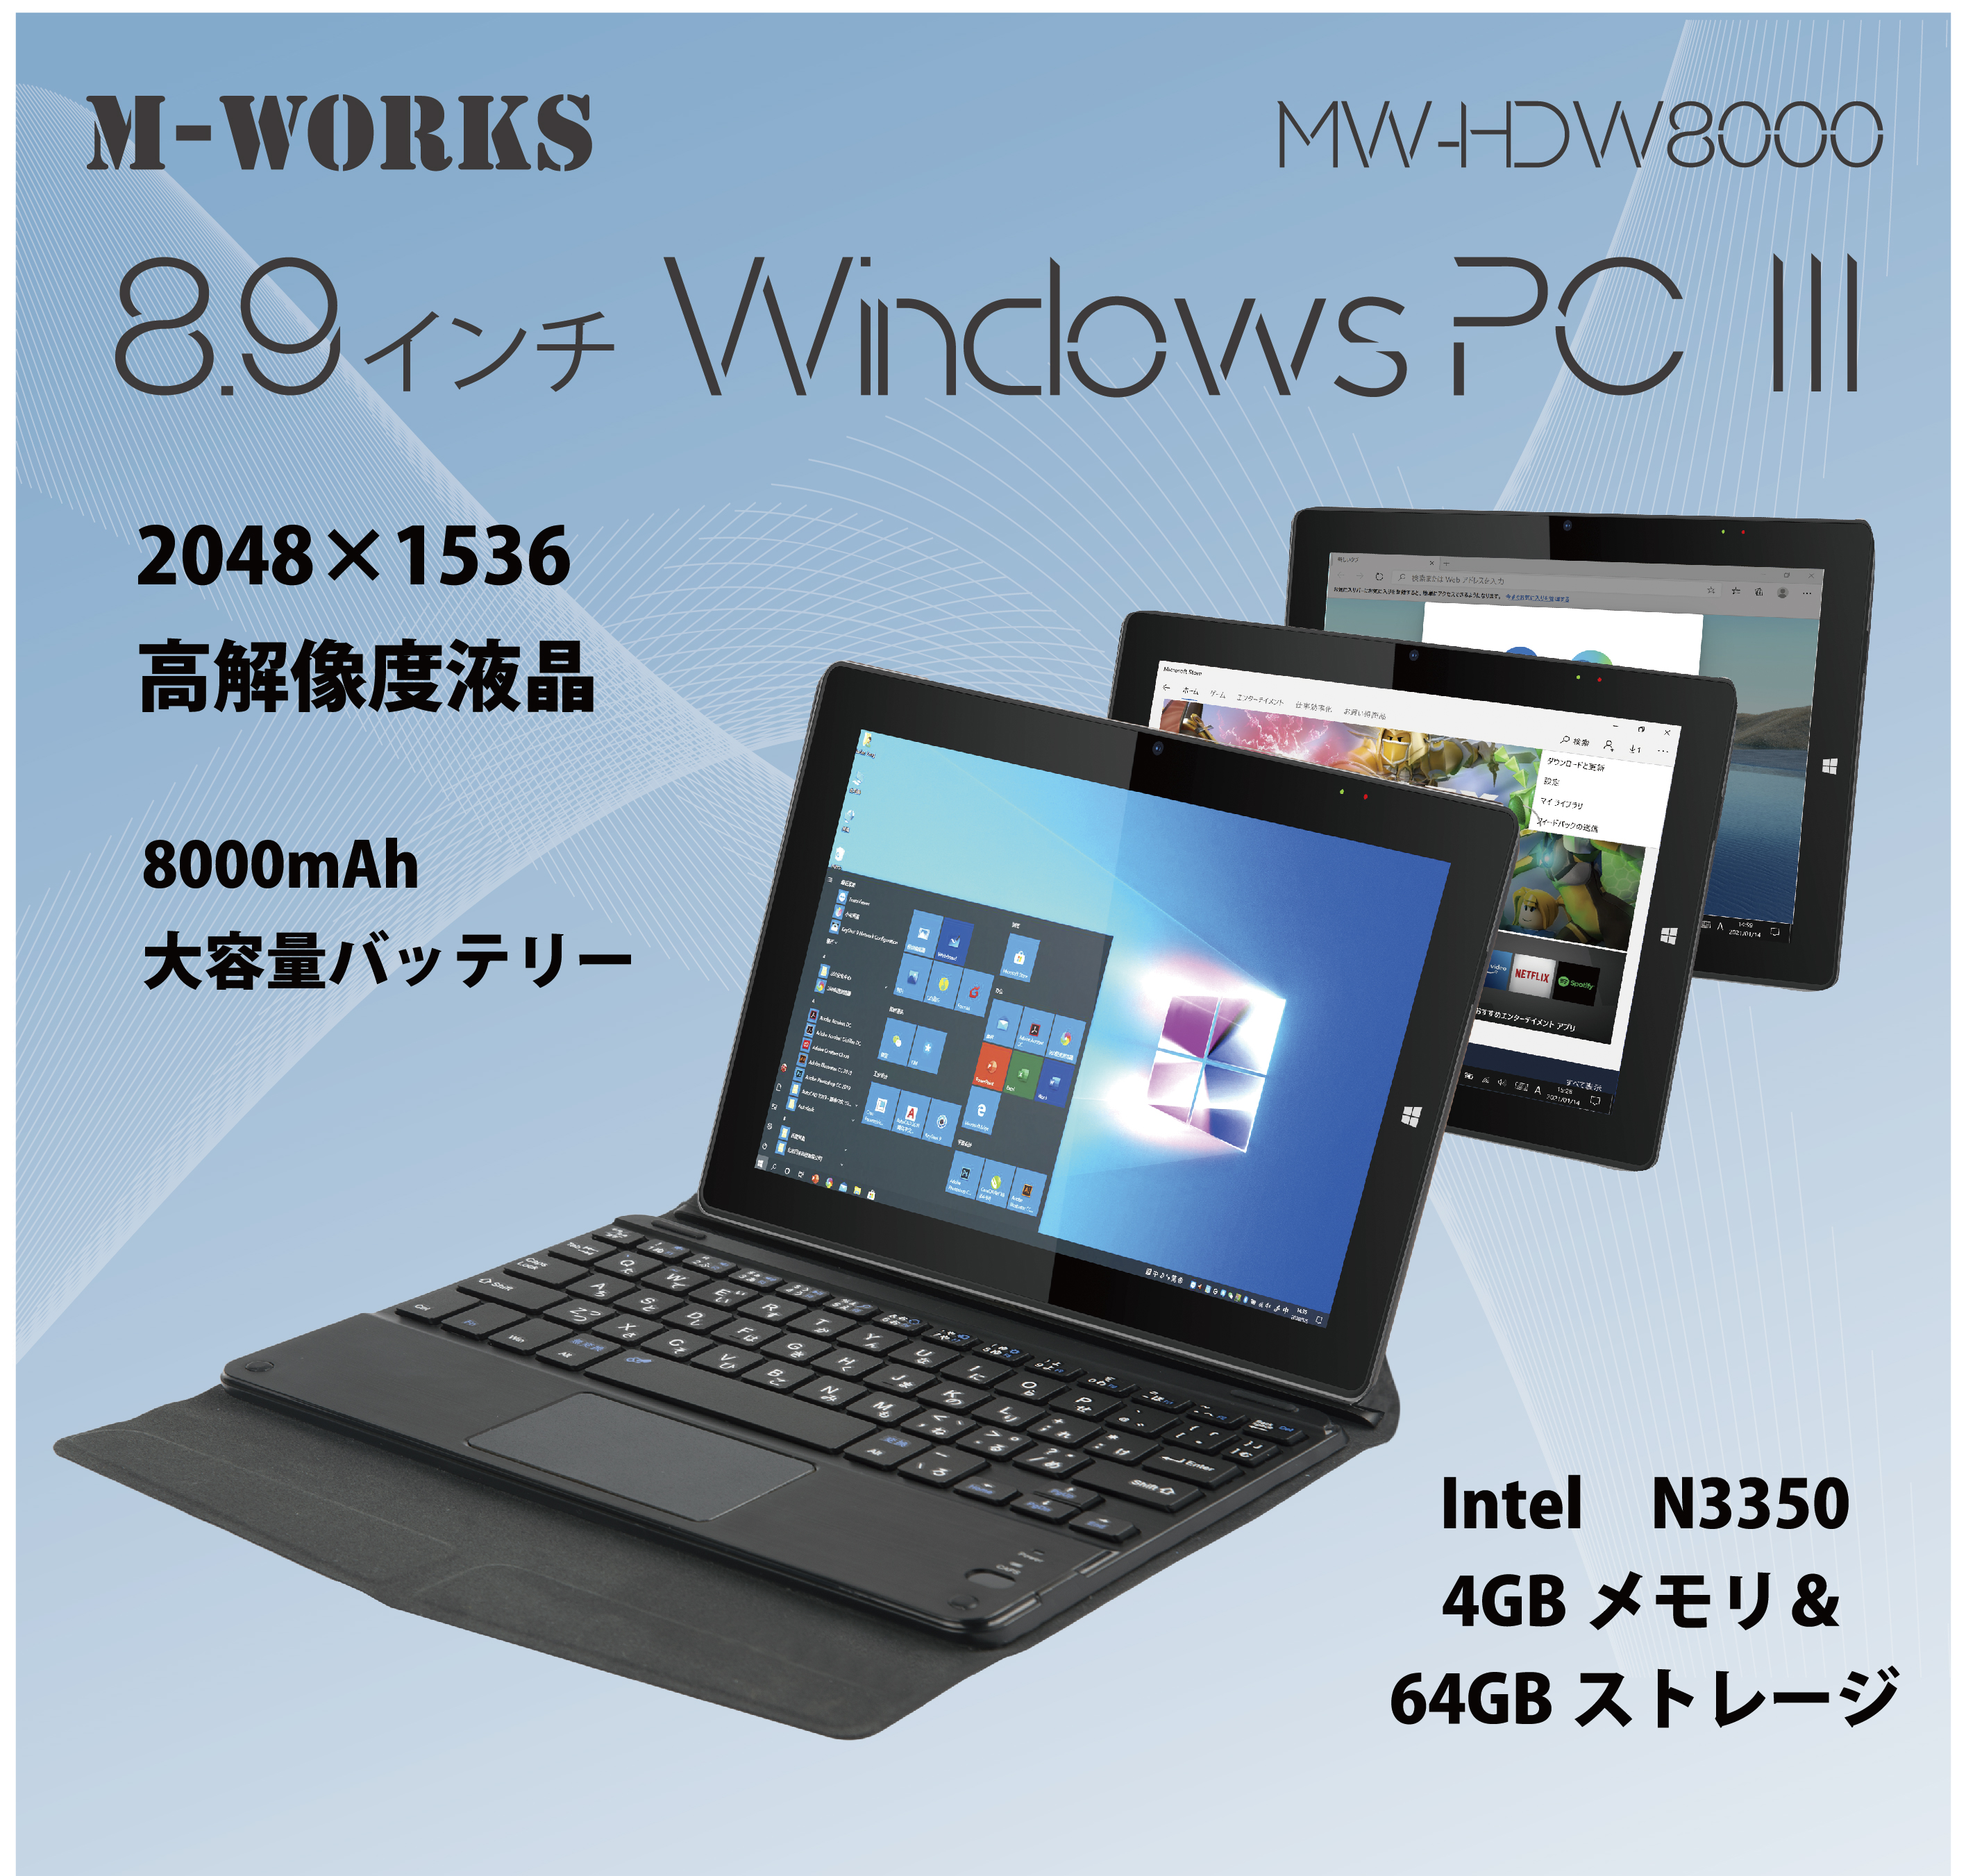 M-WORKS 8.9インチタブレットWindowsPC Ⅲ | 株式会社サイエル ...